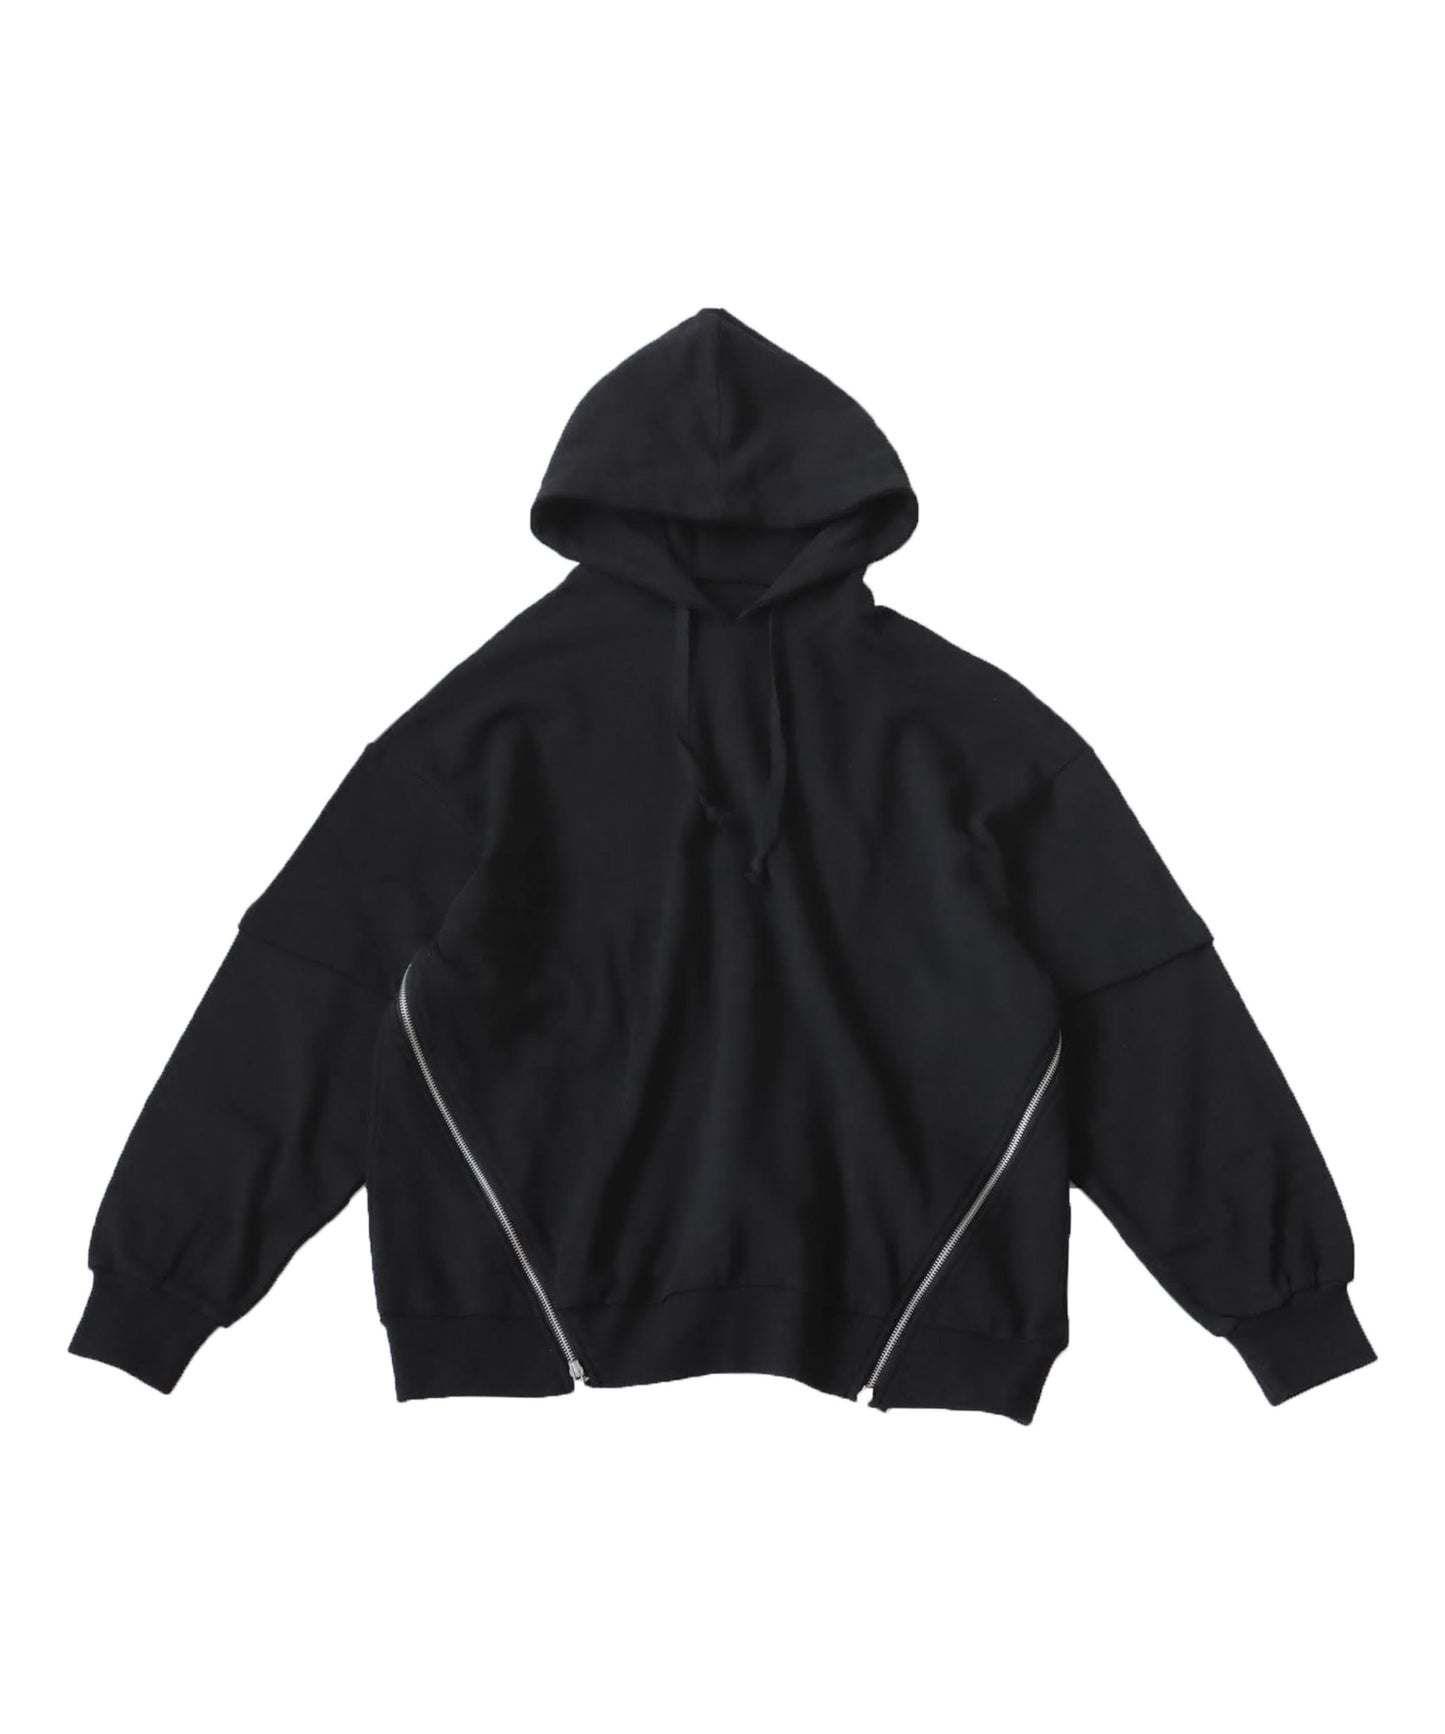 Men's zipper design hoodie